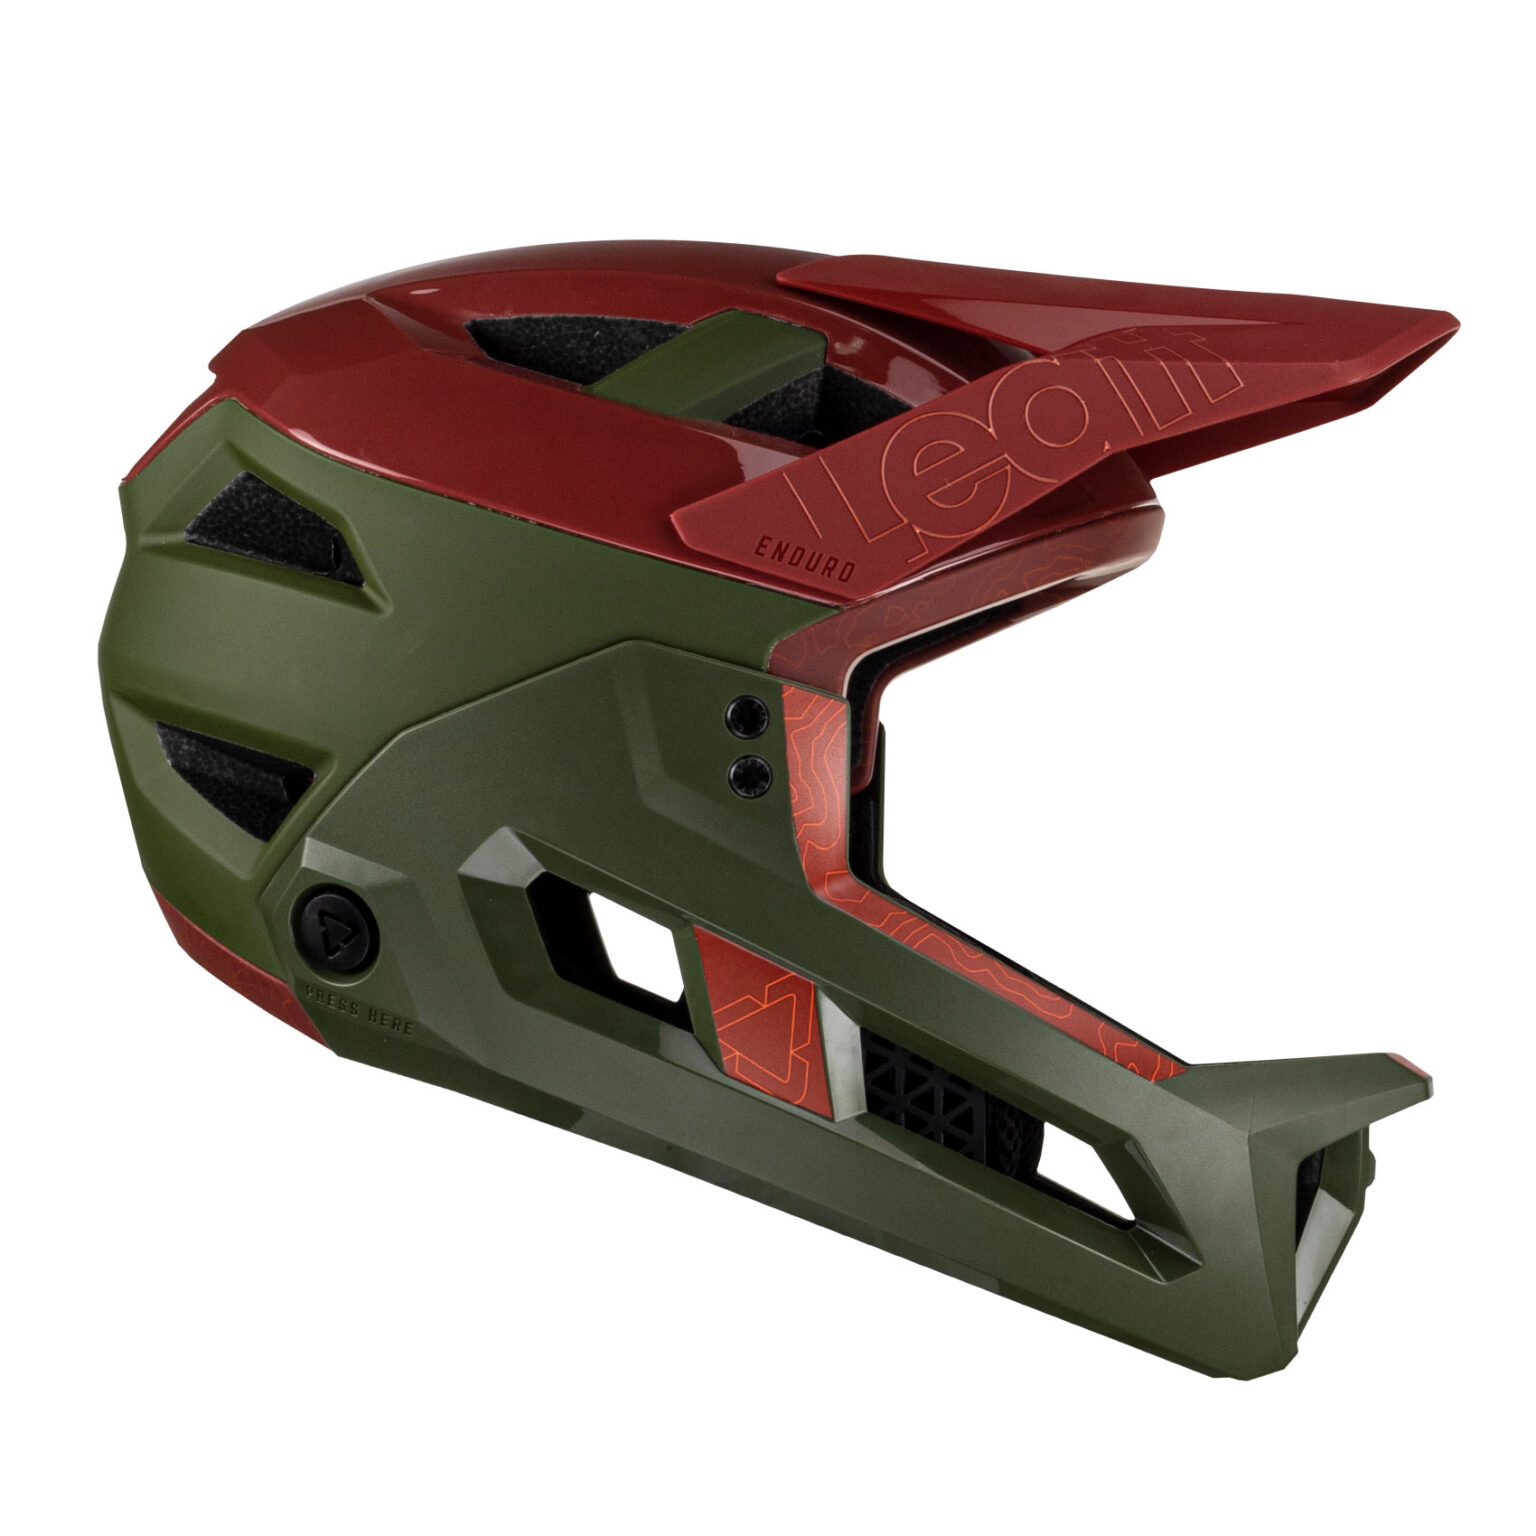 Leatt 3.0 Enduro Convertible Helmet Snaps-On Protection: Full-Face, 3/4 ...